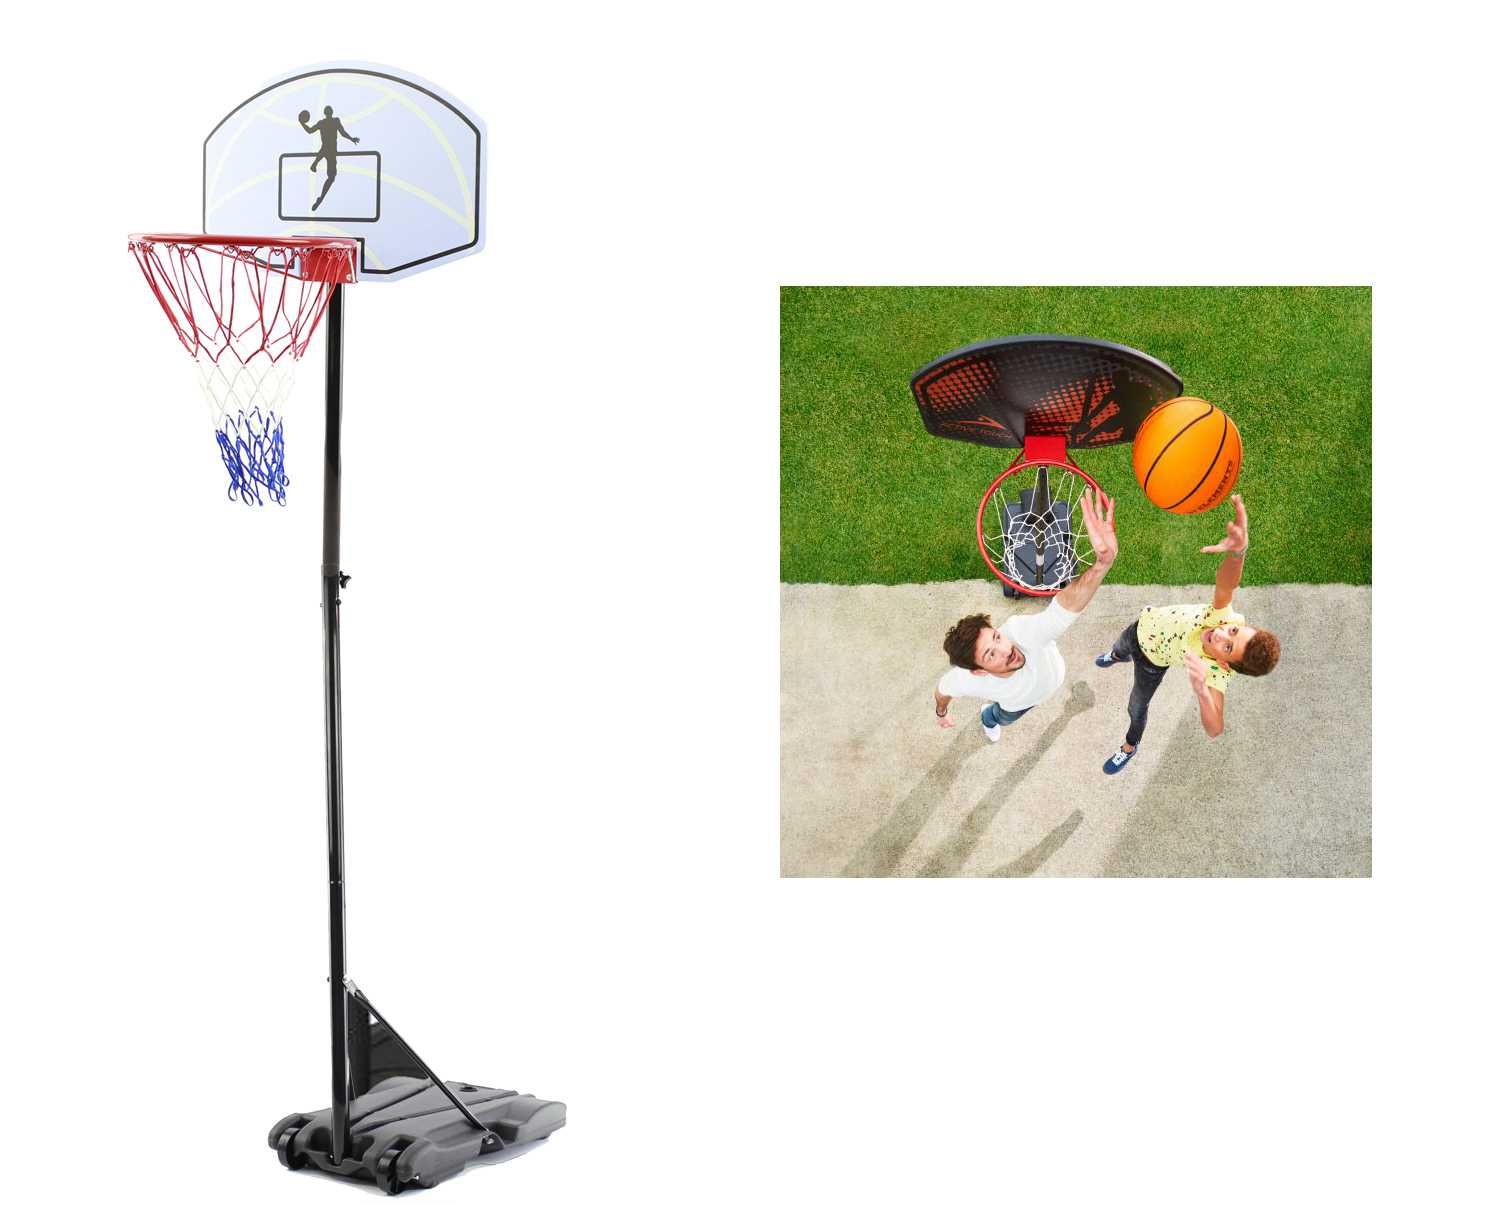 Kosz mobilny regulowany wys. 160- 210 cm koszykówka  + piłka MOCNY